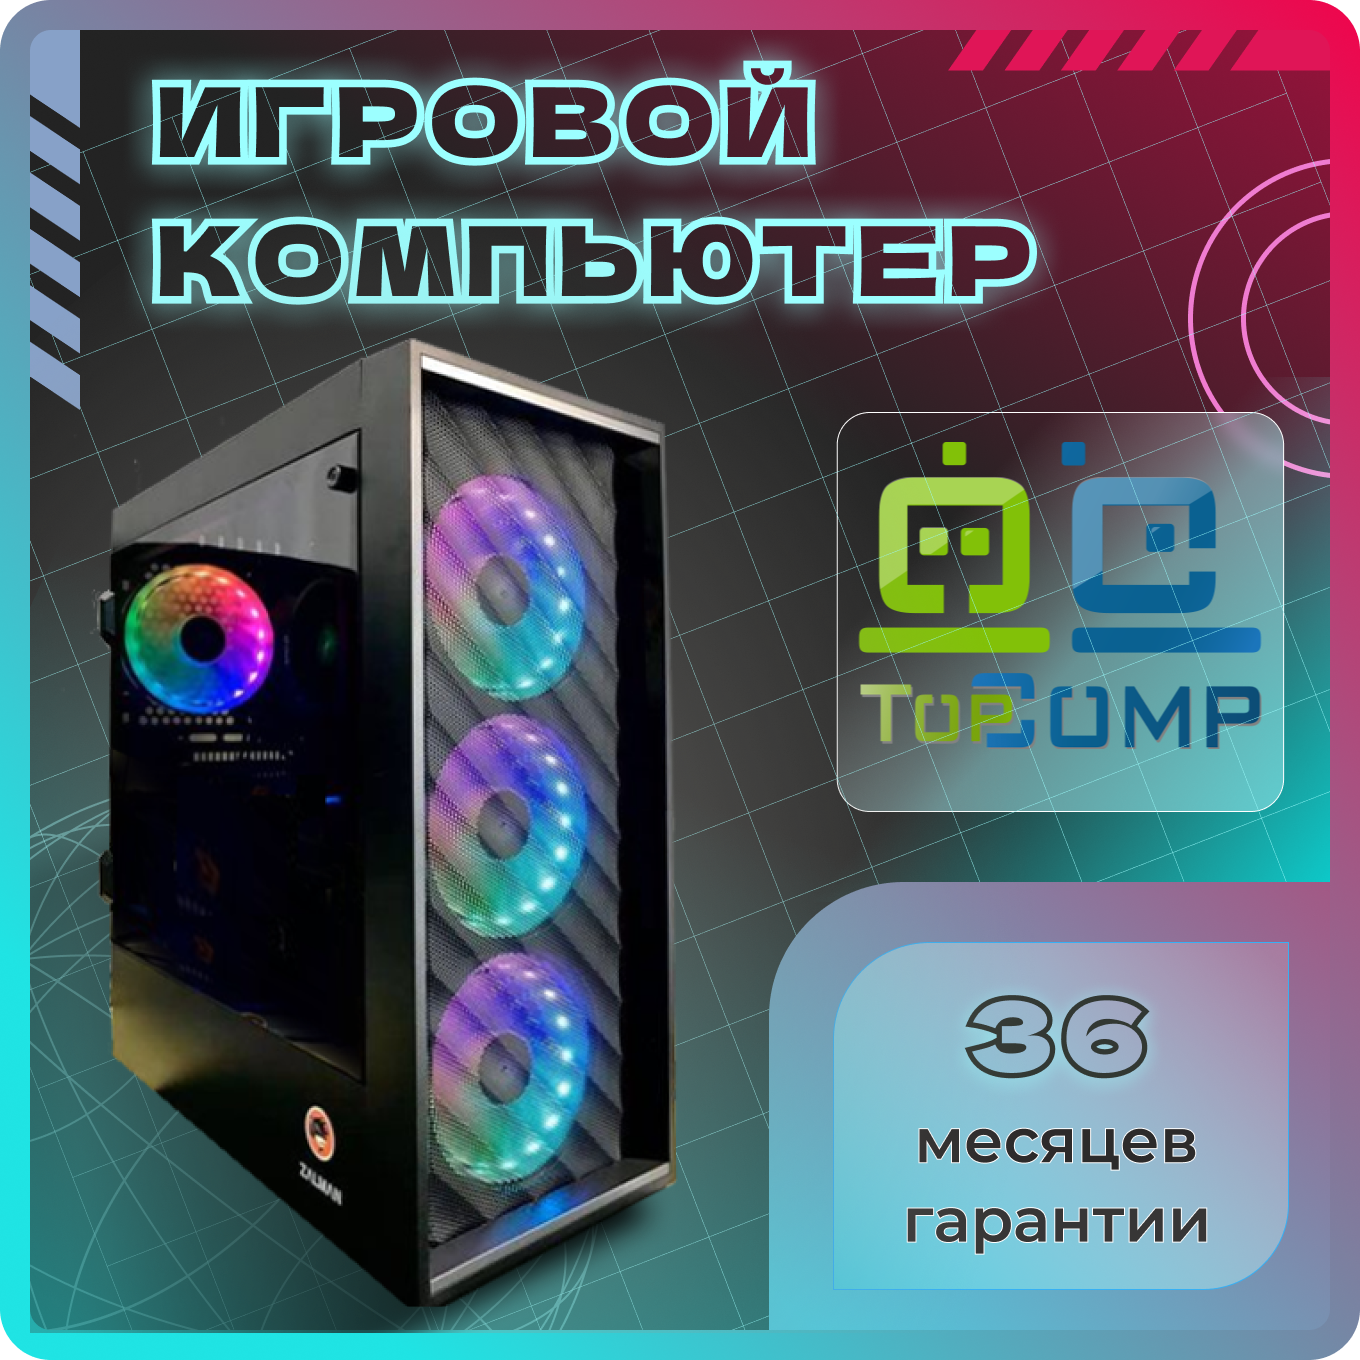 Системный блок TopComp MG 51947001 AMD Ryzen 7 3700X /Amd A320 /16 Гб /HDD1000 Гб /NVIDIA GeForce RTX 3080 /Без ОС